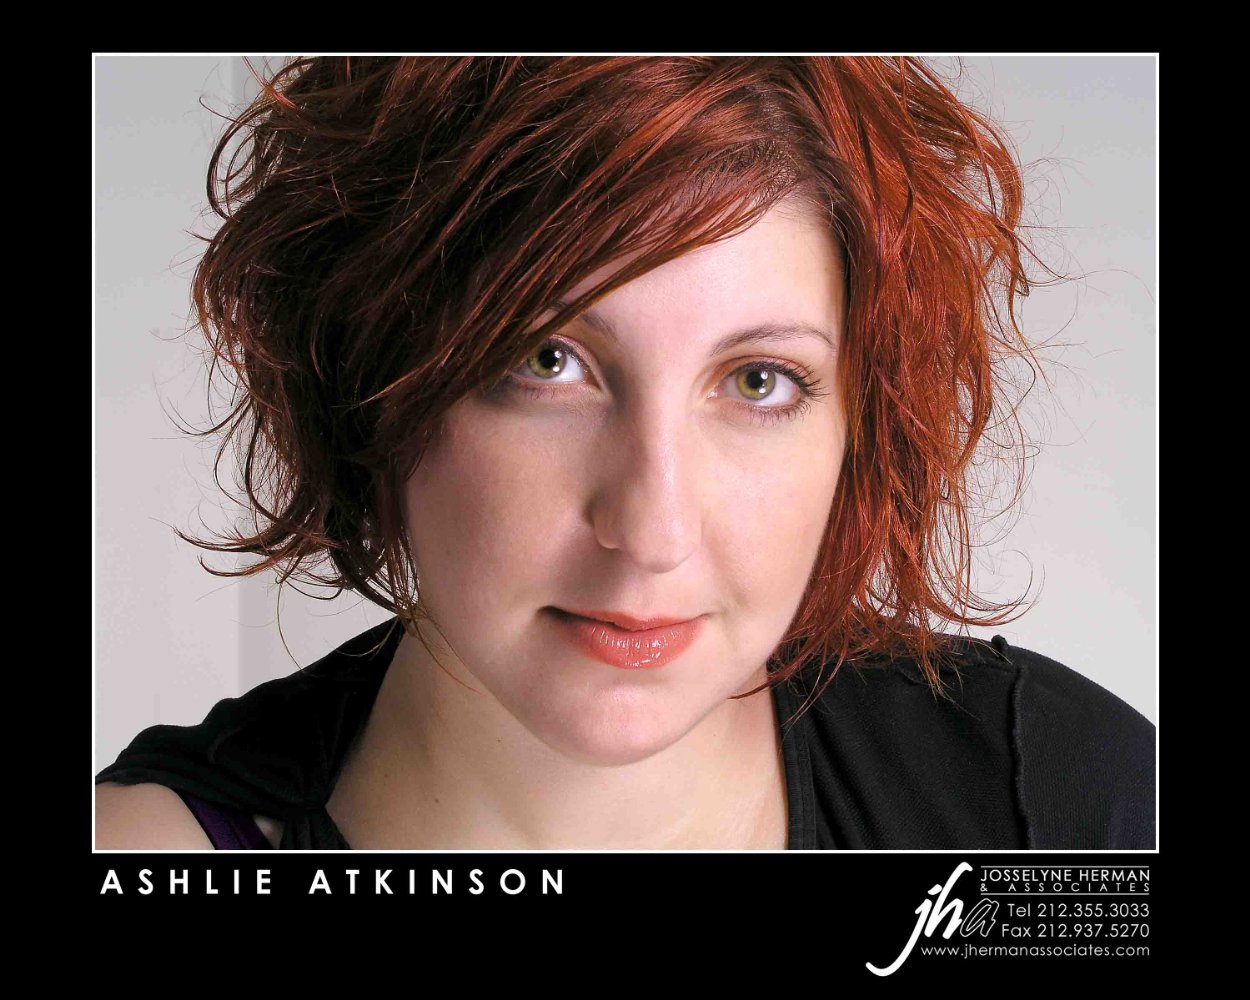 Ashlie Atkinson